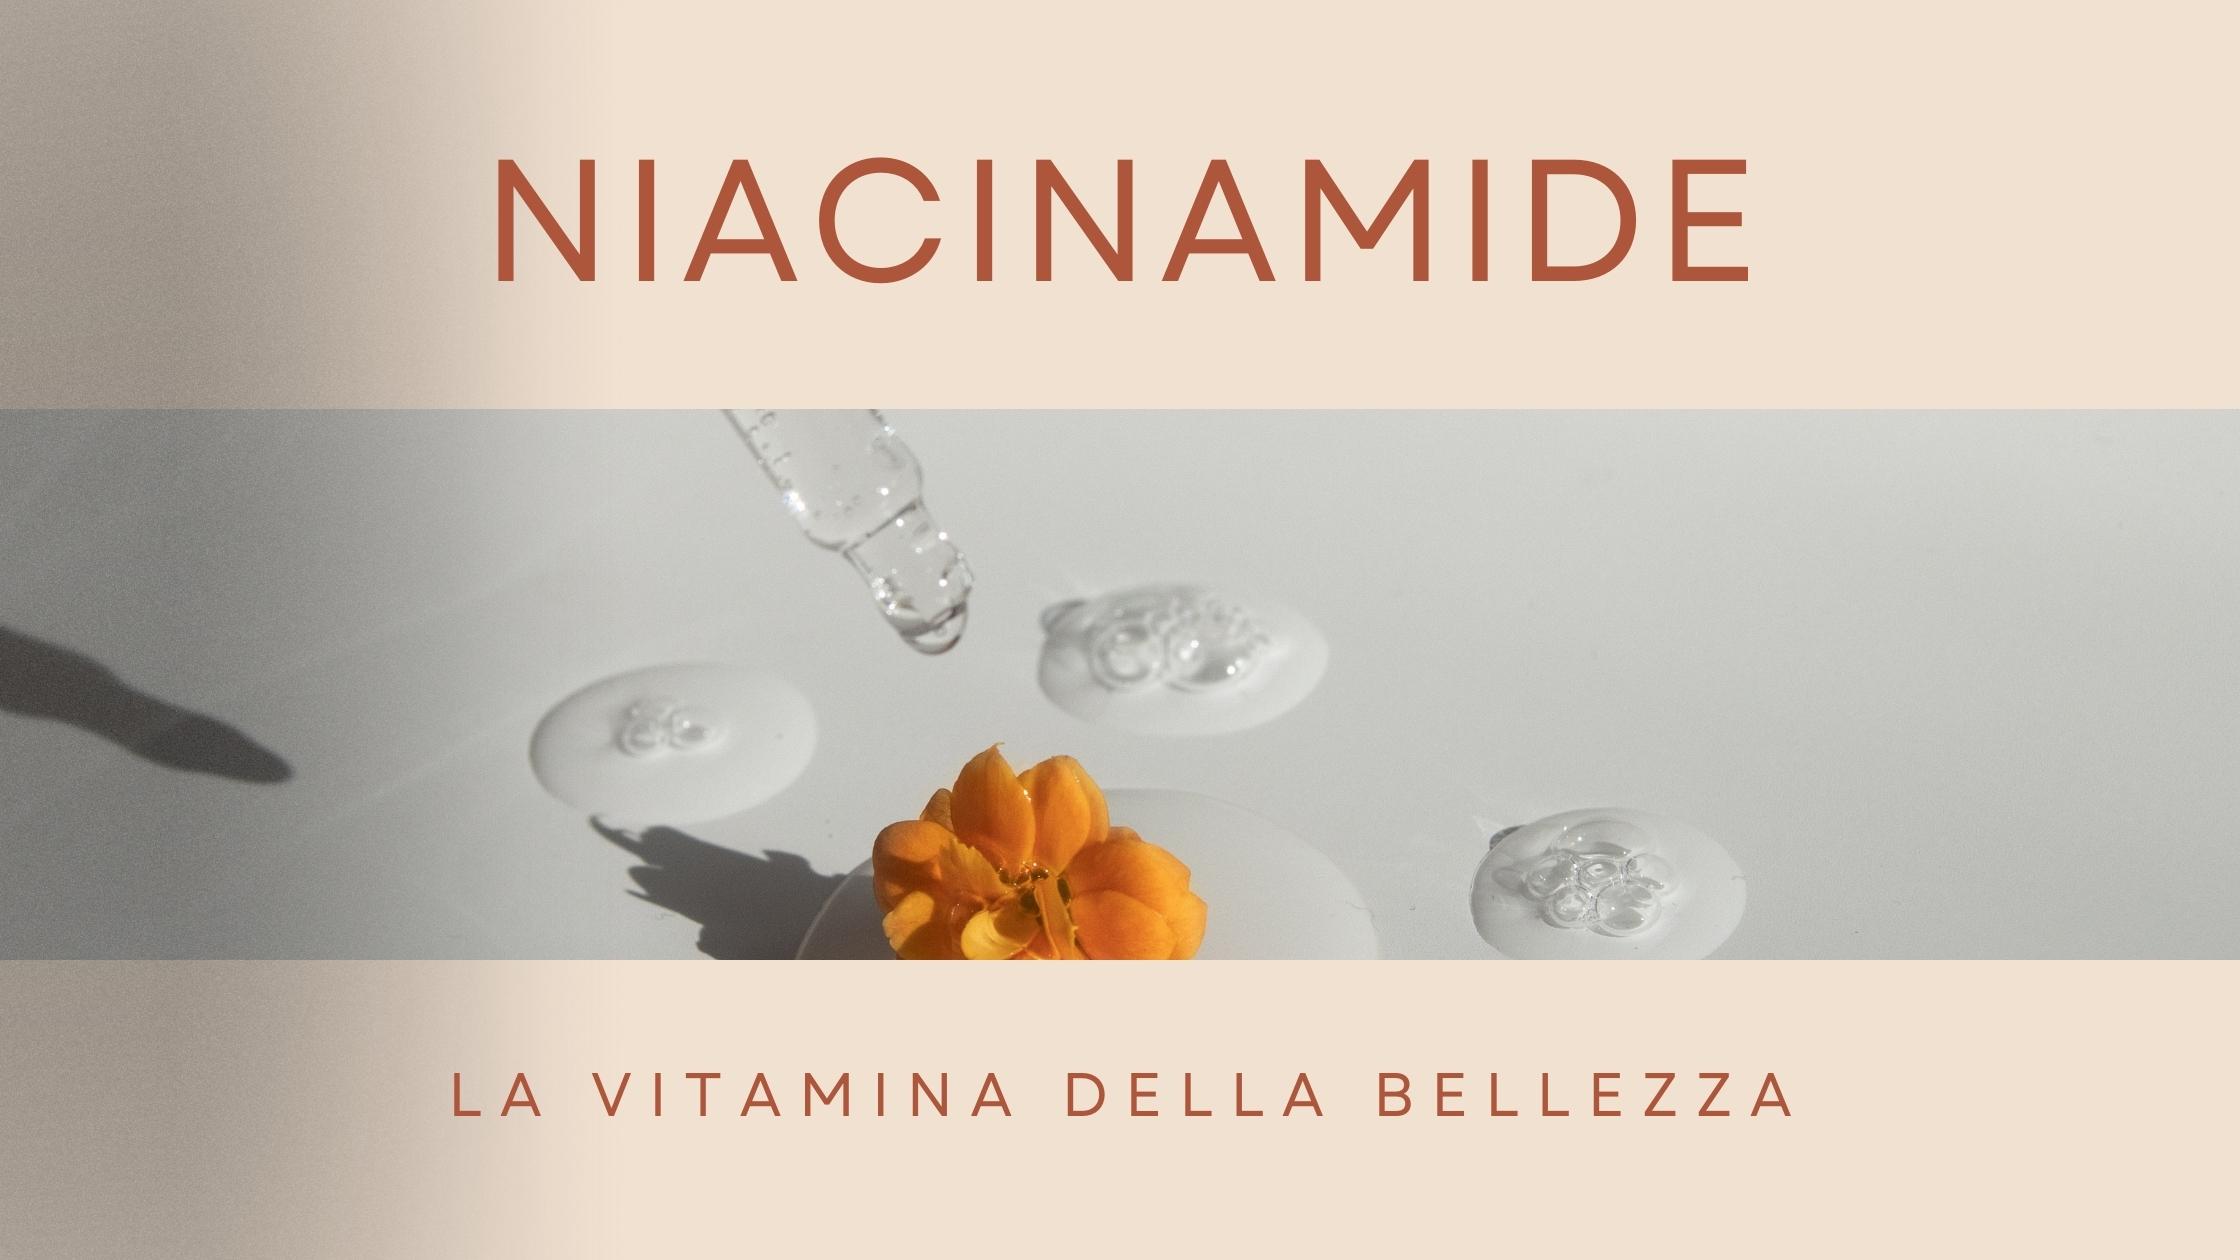 niacinamide-vitamina-della-bellezza-cosmetici-bio-italiani